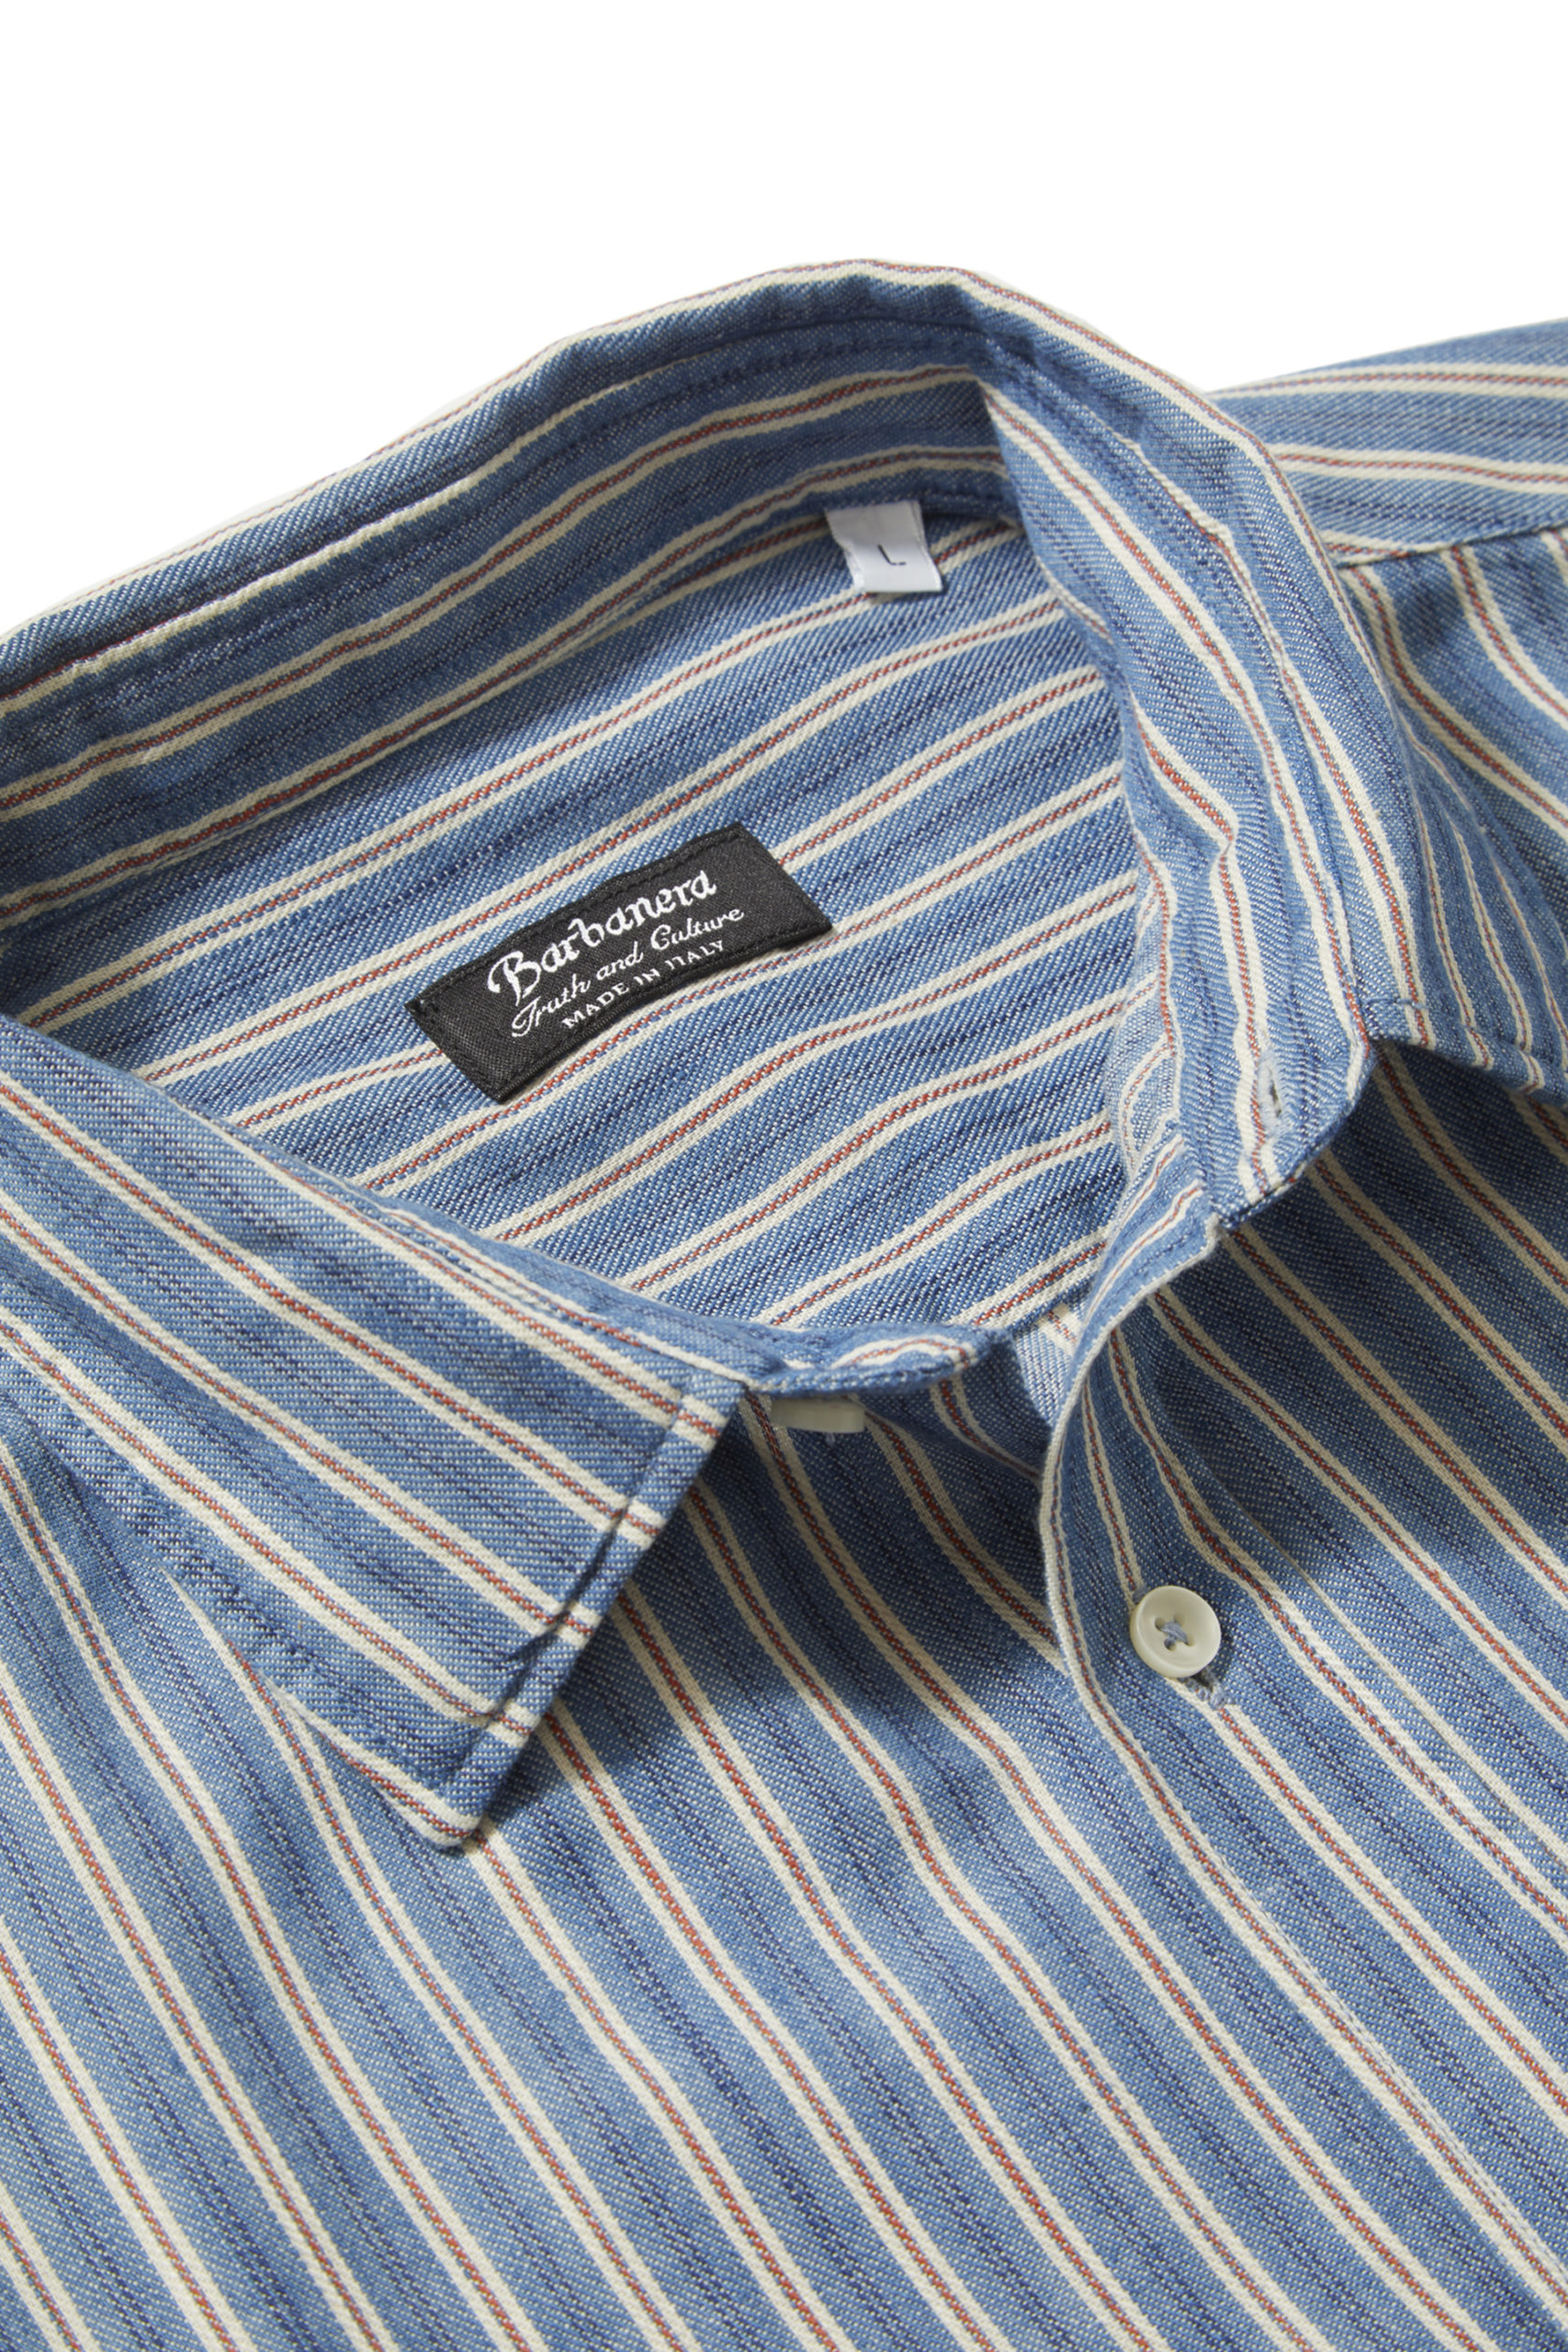 Faulkner Light Blue Striped Japanese Selvedge Cotton Shirt - Barbanera